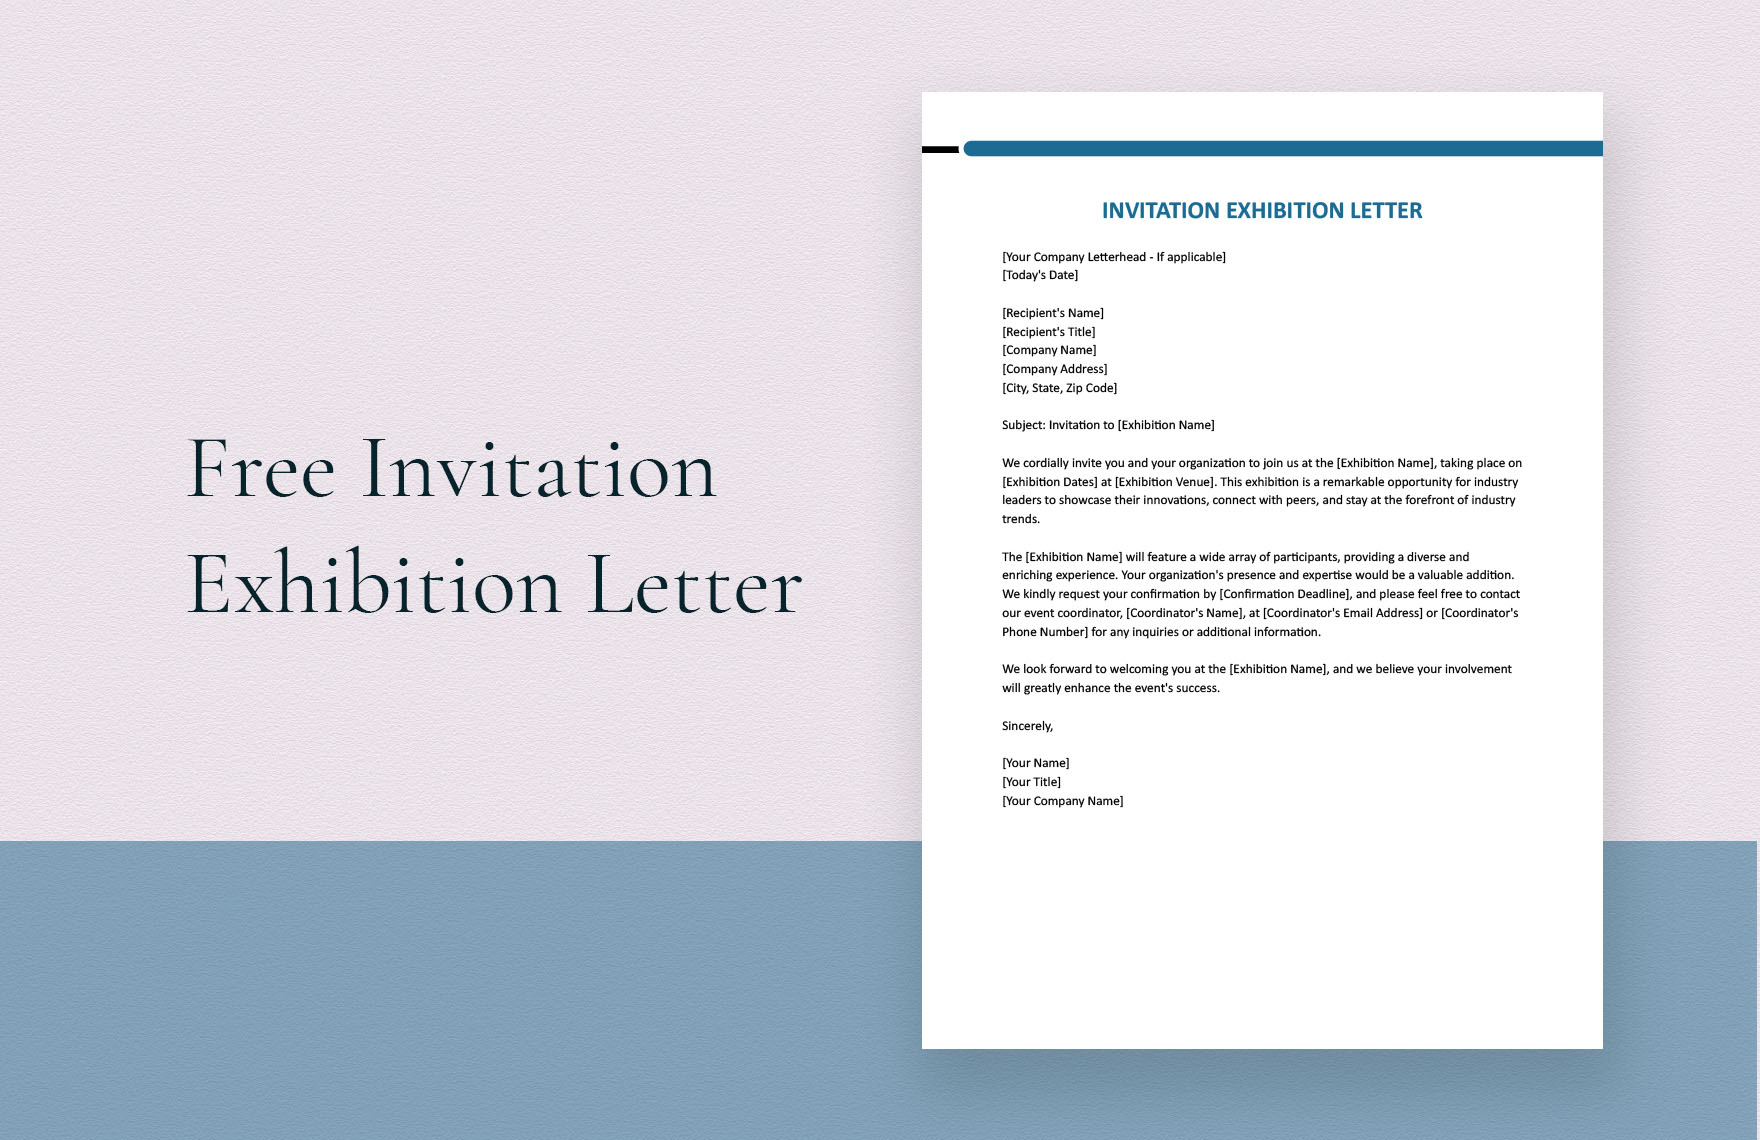 Invitation Exhibition Letter